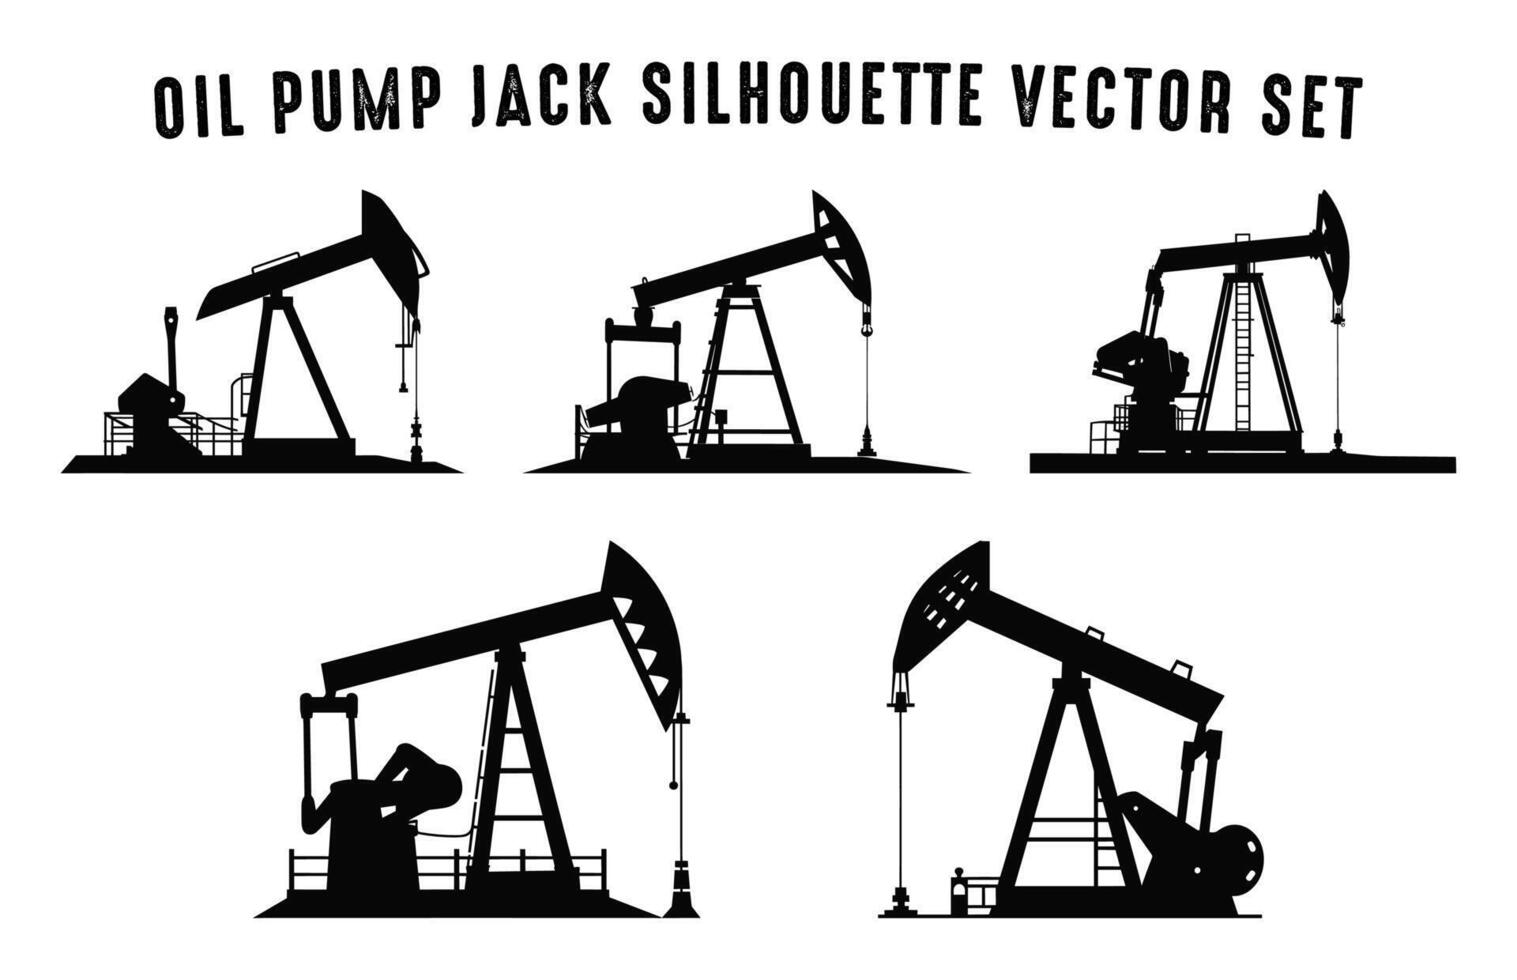 pétrole pompe jack silhouette vecteur empaqueter, Pumpjack noir silhouettes ensemble